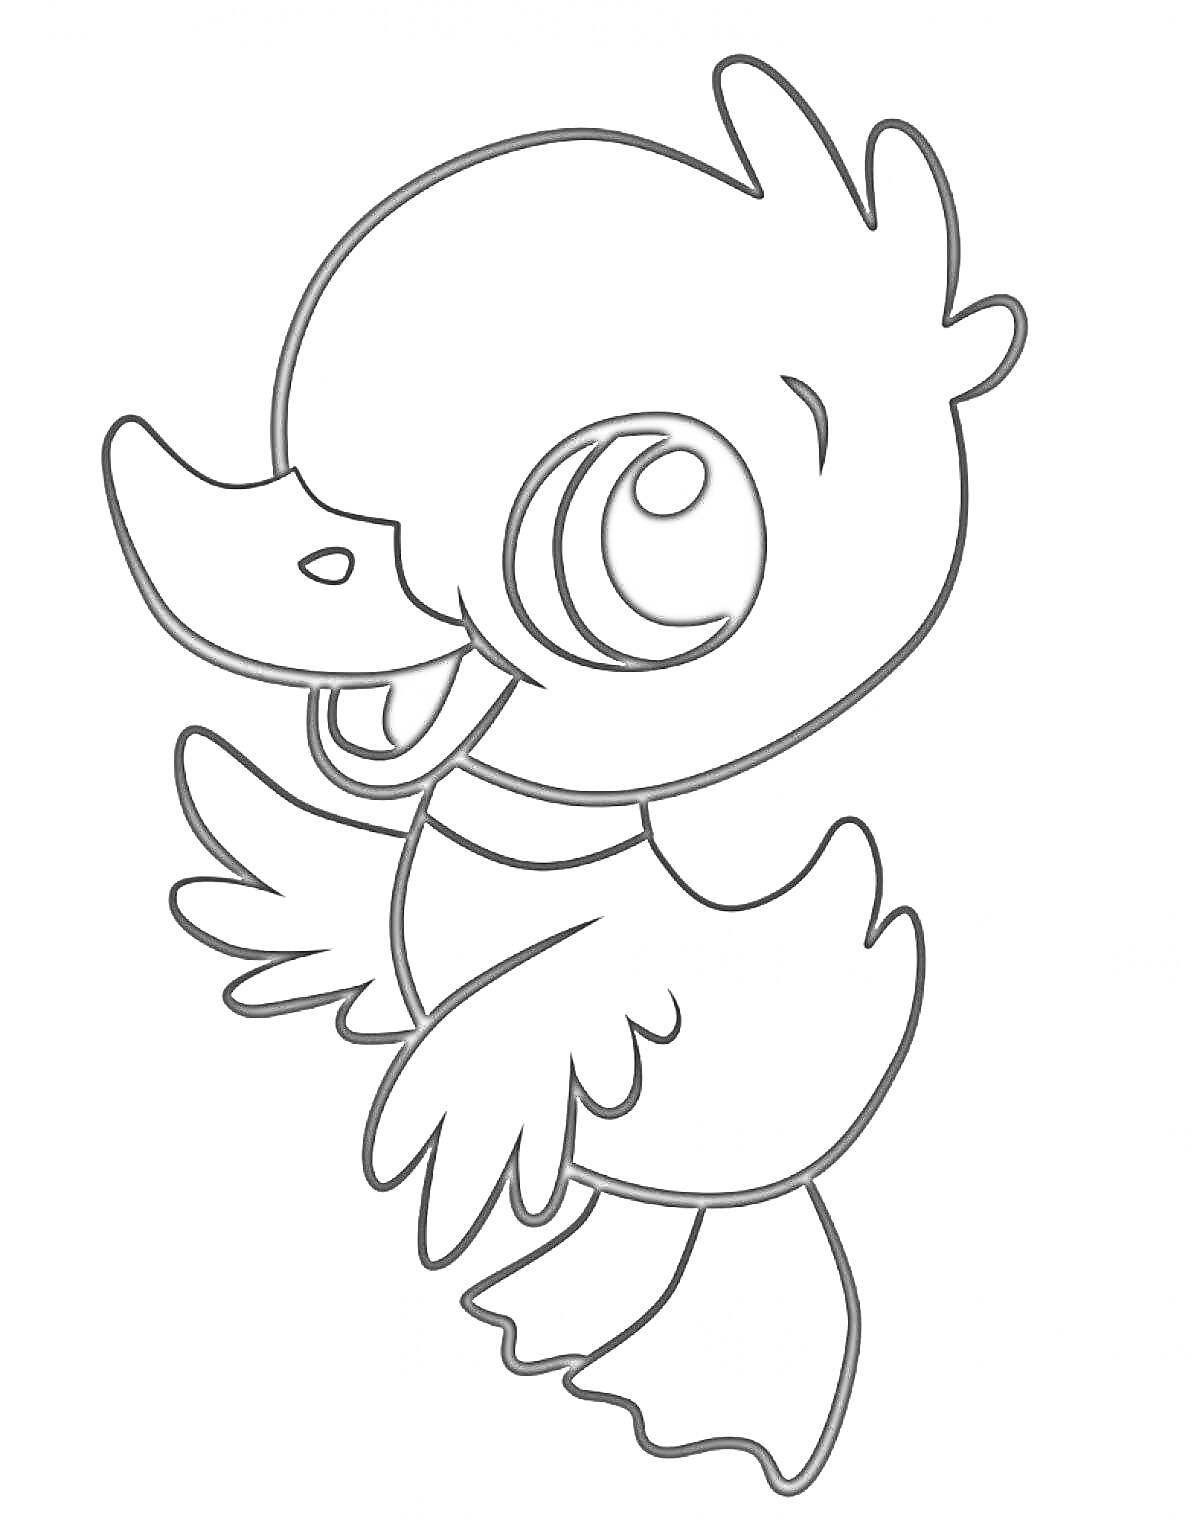 Раскраска Птенец утки с большими глазами и крыльями